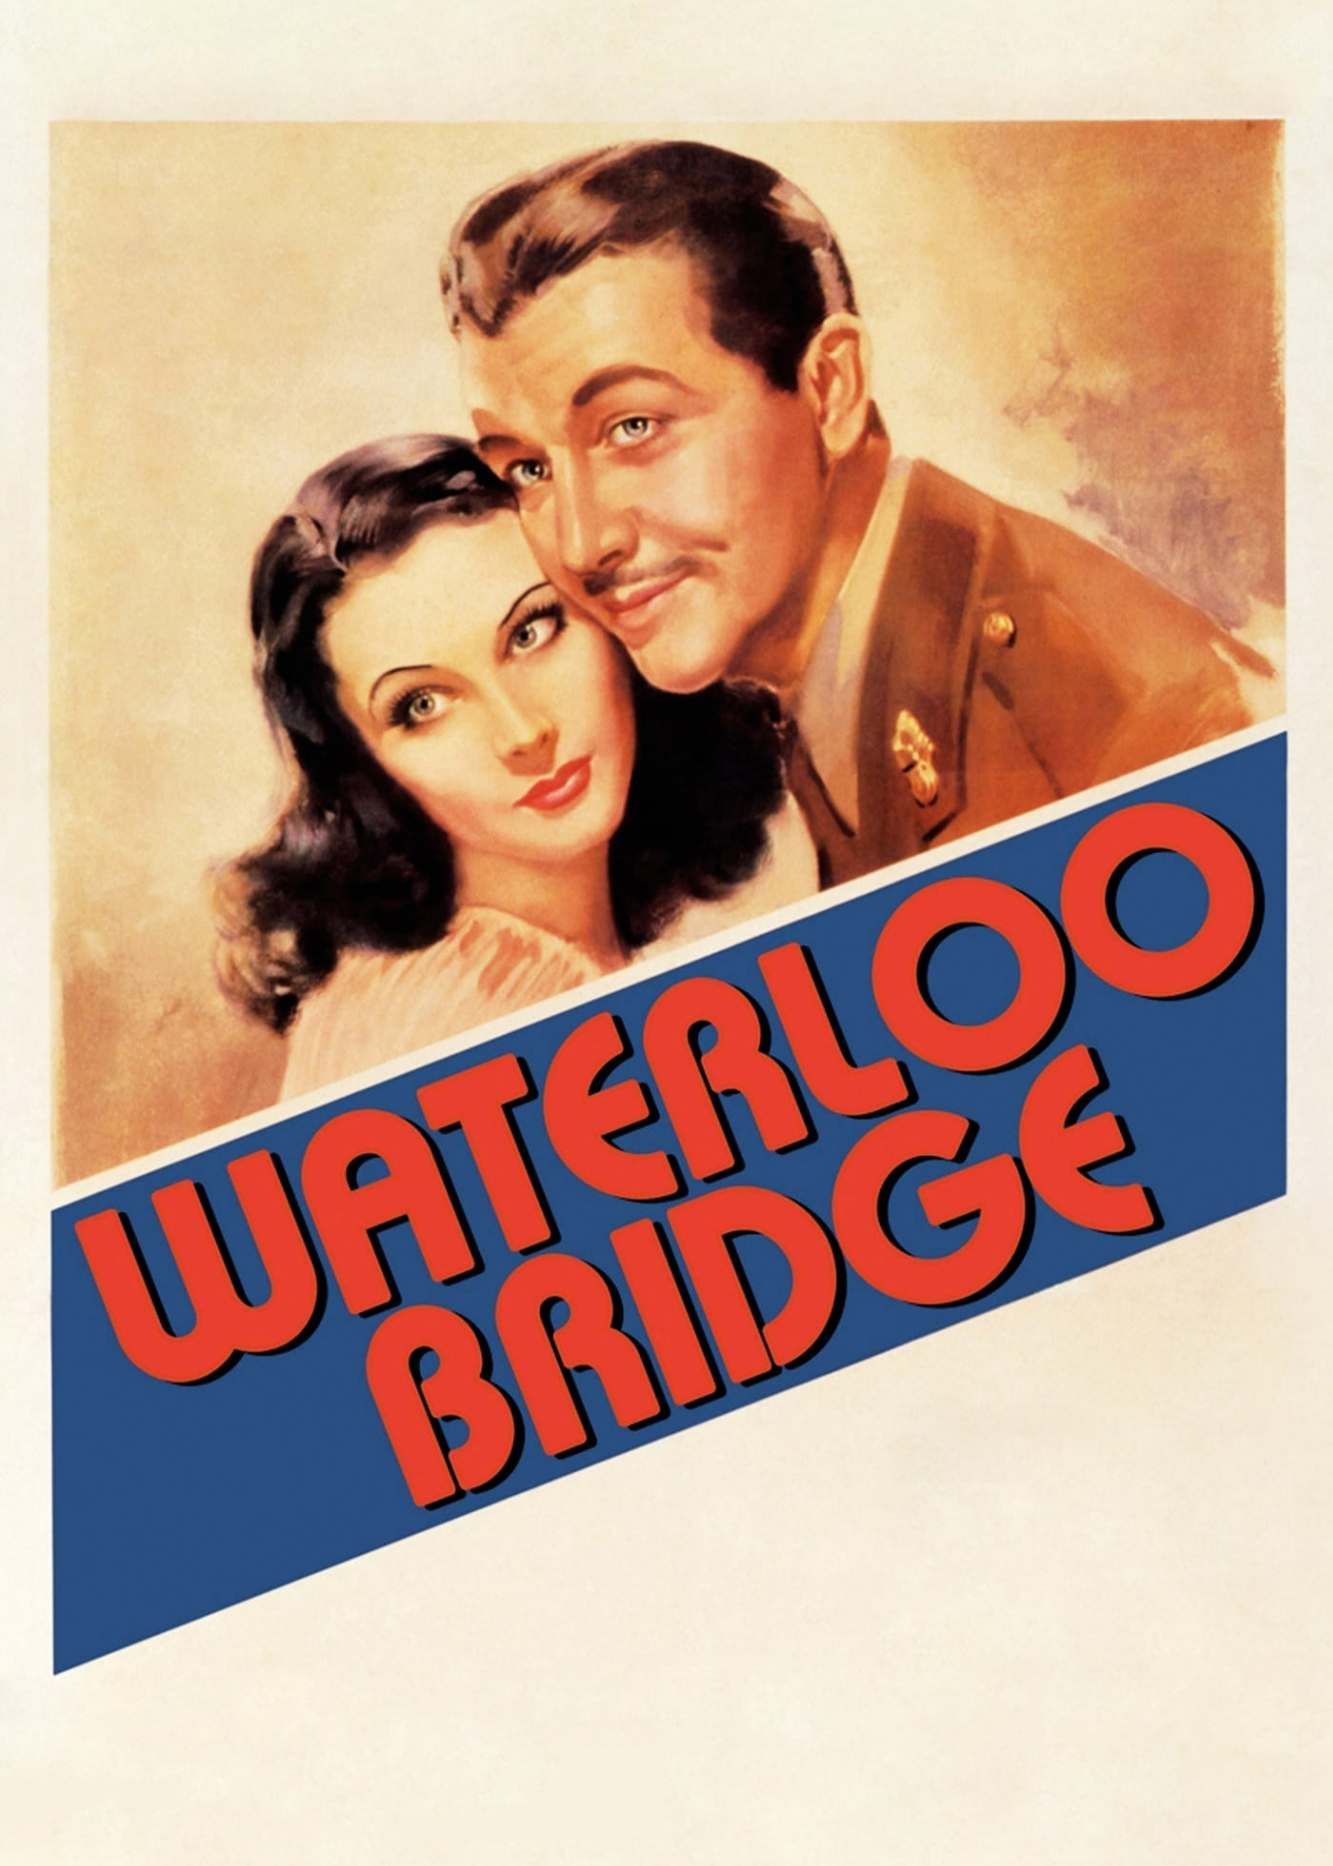 Poster Phim Waterloo Bridge (Waterloo Bridge)